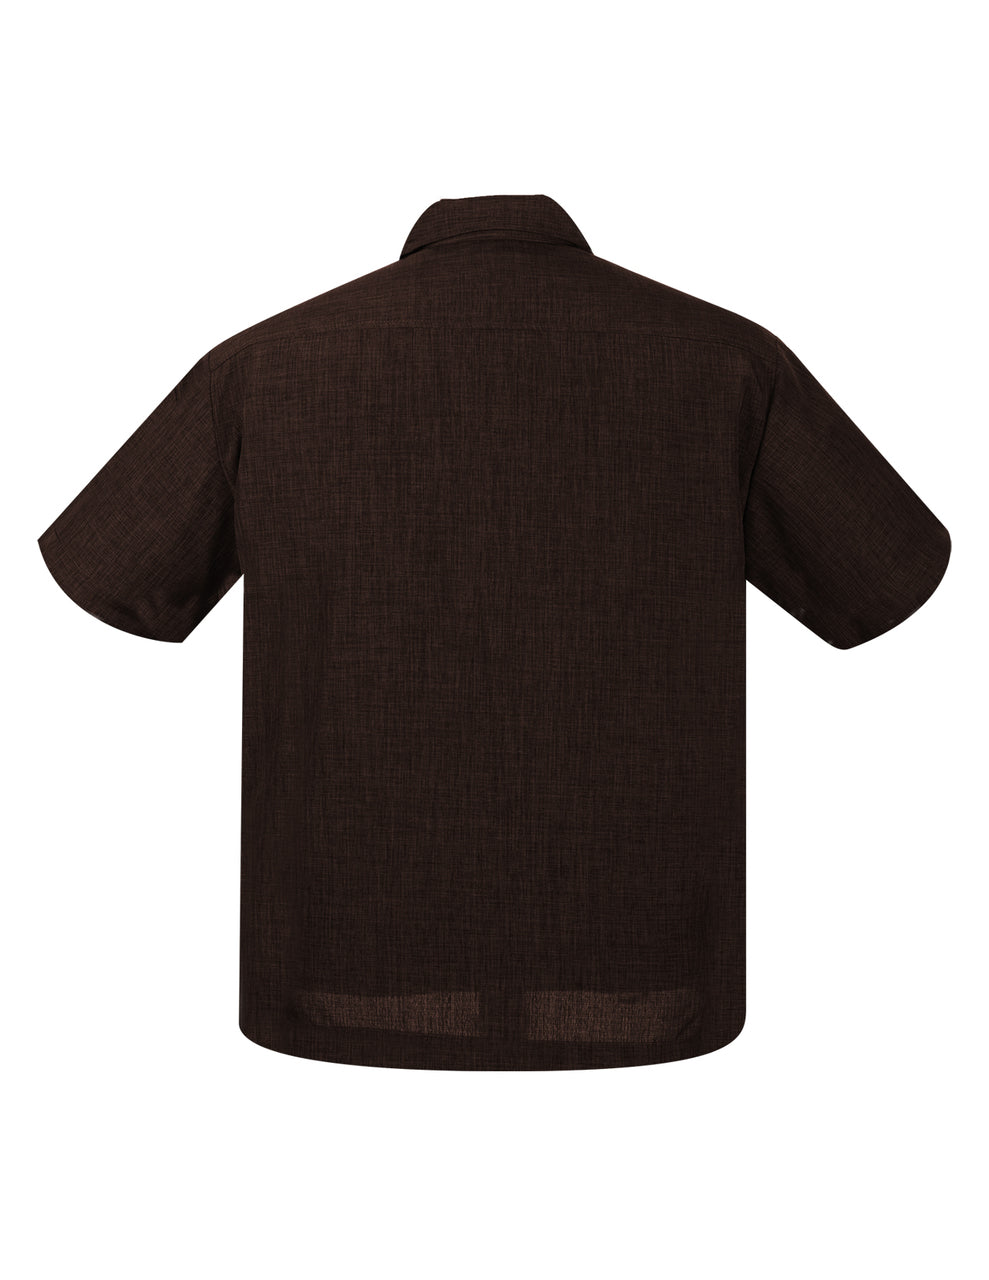 Designer Shirt Buttons - Collar/Sleeve/Front Shirt Buttons - 1 Gross -  Light Brown - WAWAK Sewing Supplies